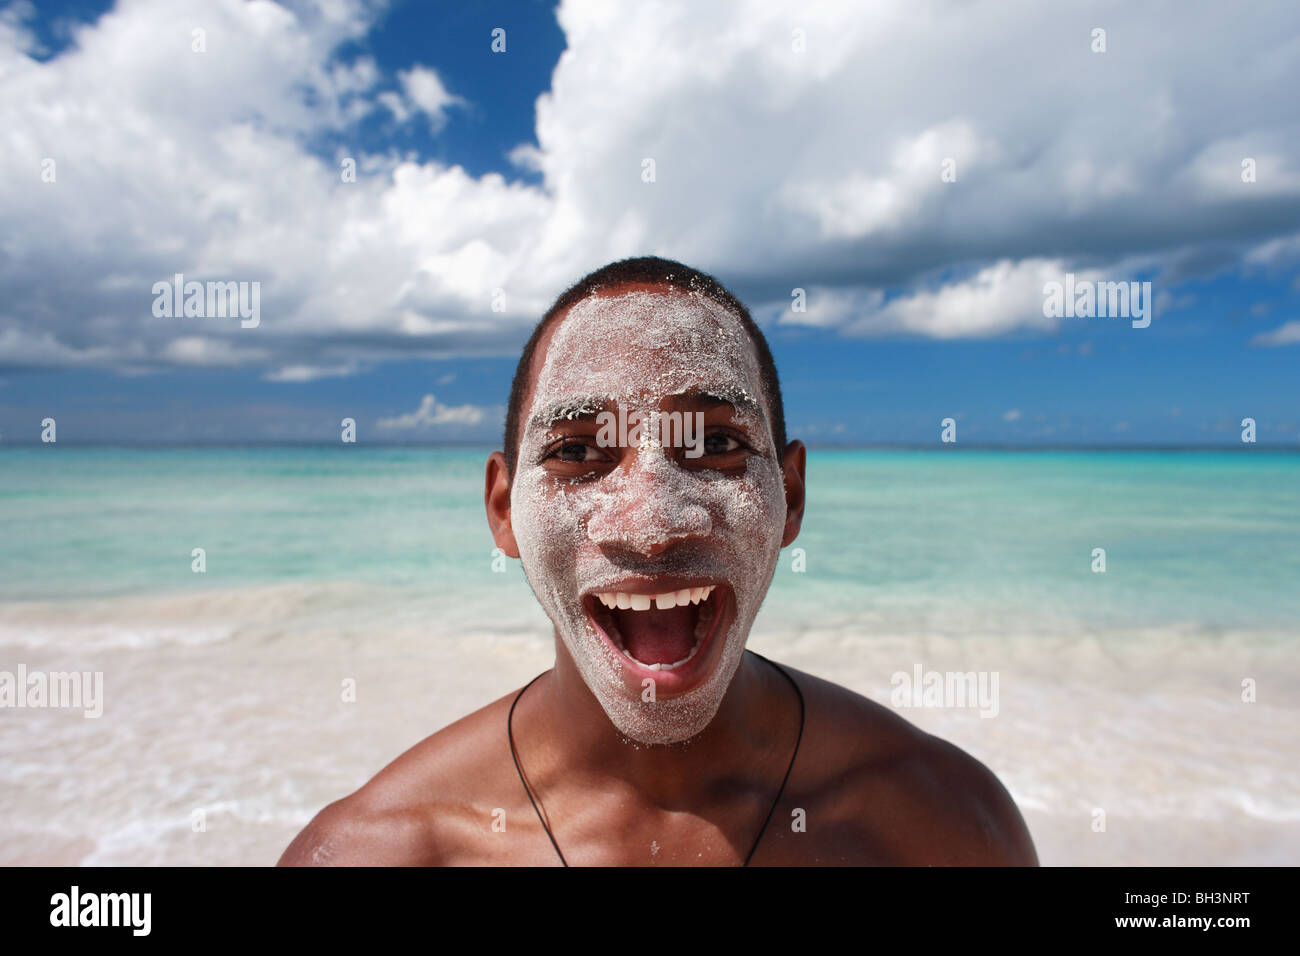 Jeune homme sur la plage tropicale de sable sur son visage, rire Banque D'Images